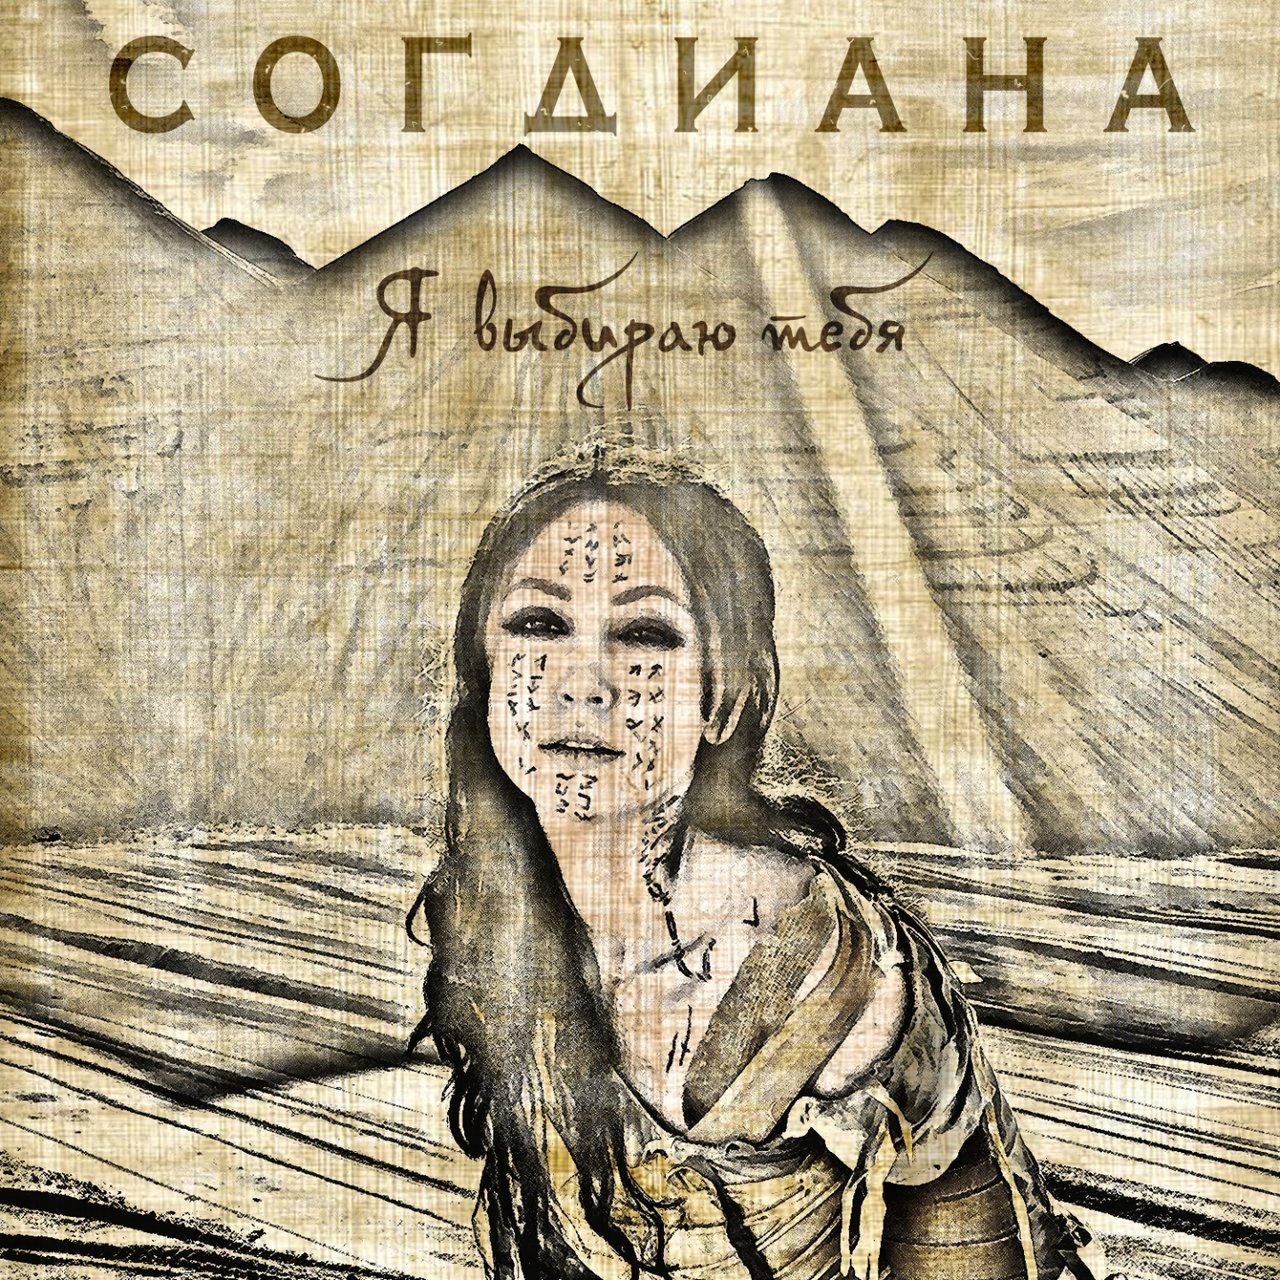 Sogdiana Ya vybirayu tebya cover artwork